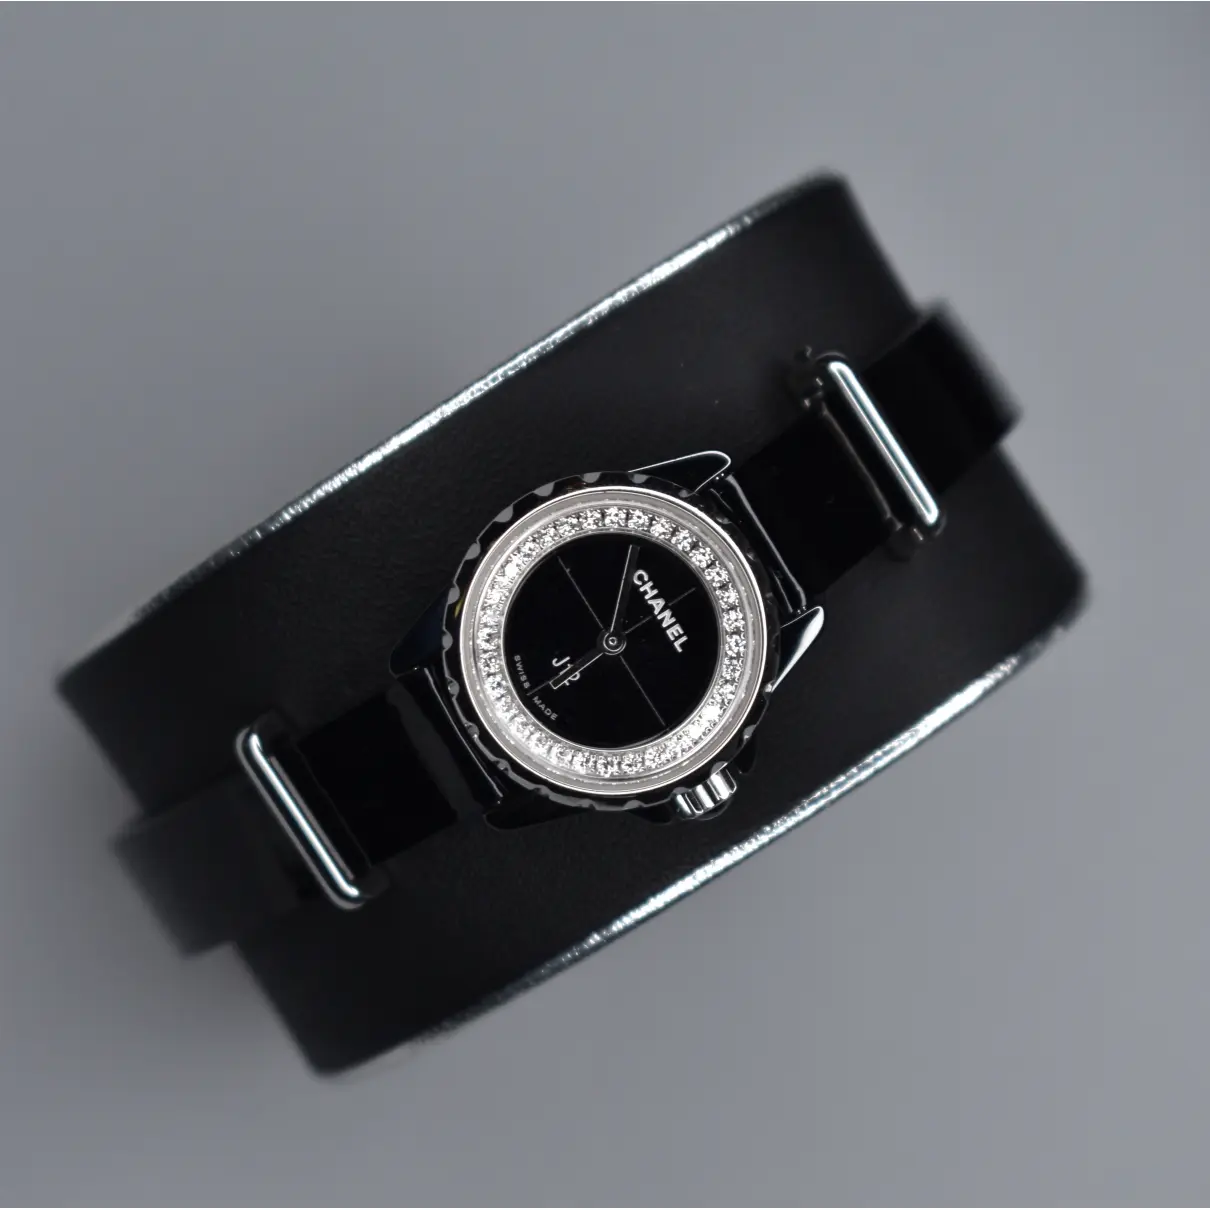 J12 XS ceramic watch Chanel